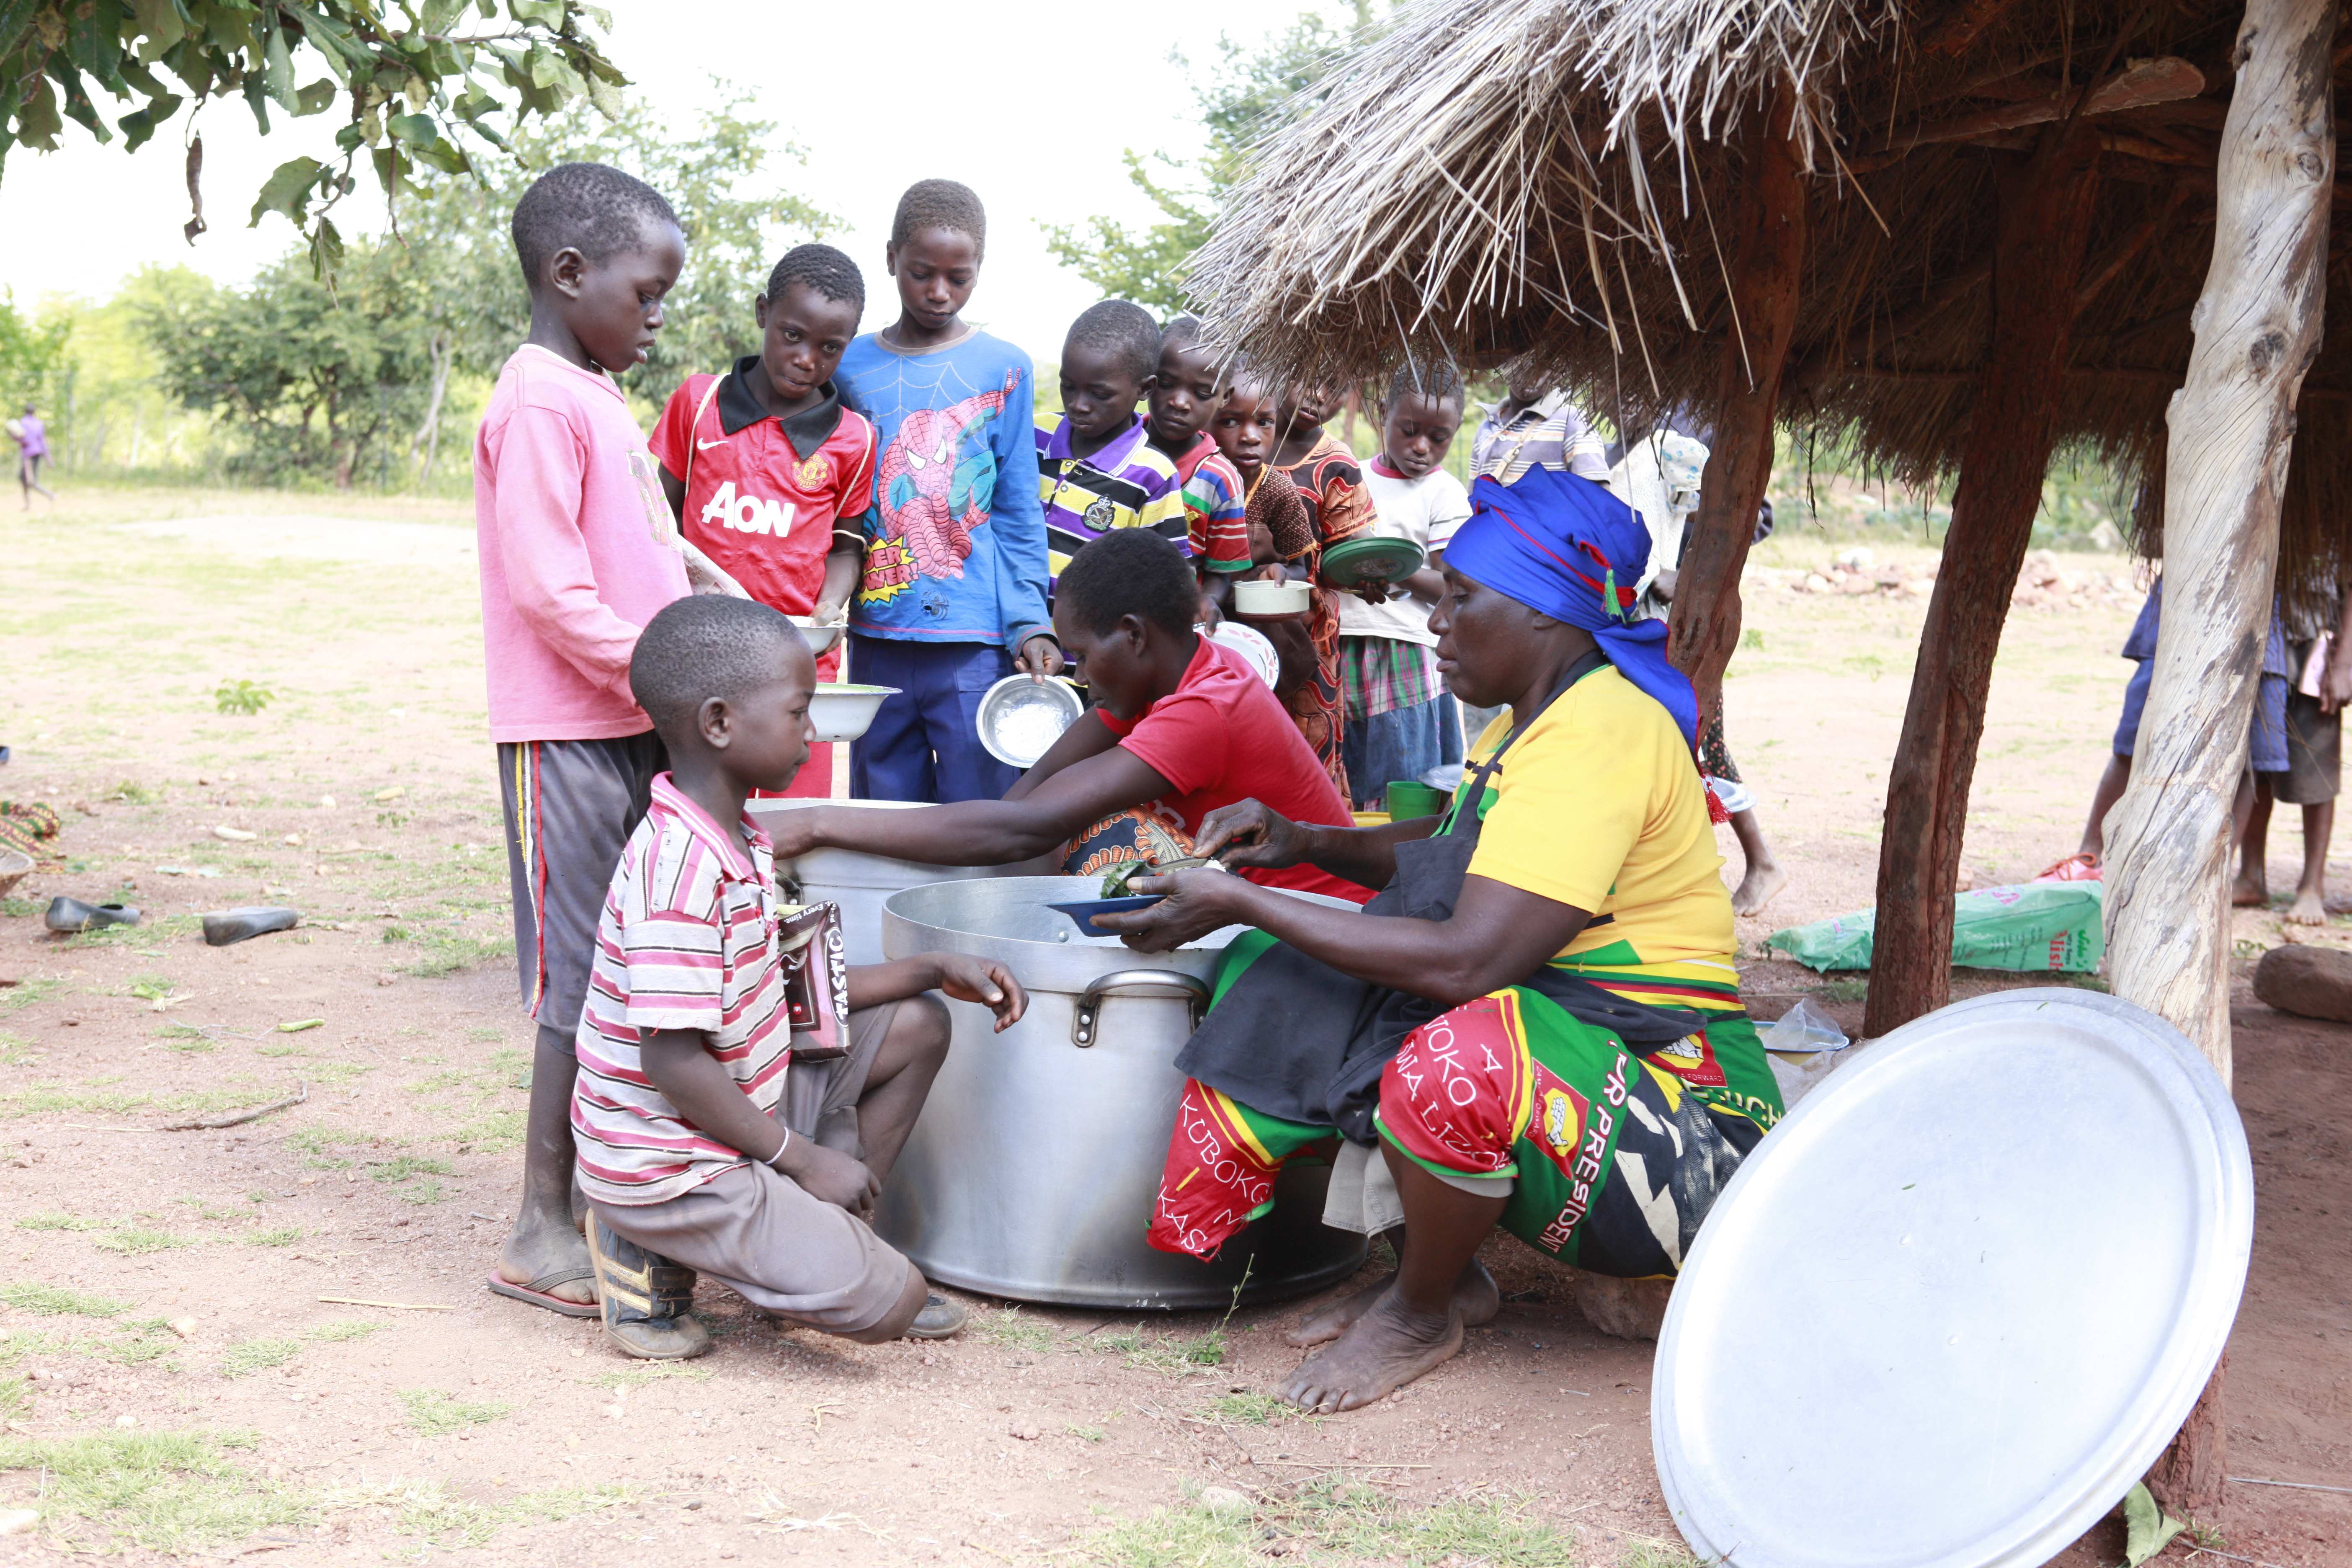 Nahrhafte Mahlzeit für Kinder in Sambia (Foto: Kindernothilfepartner)